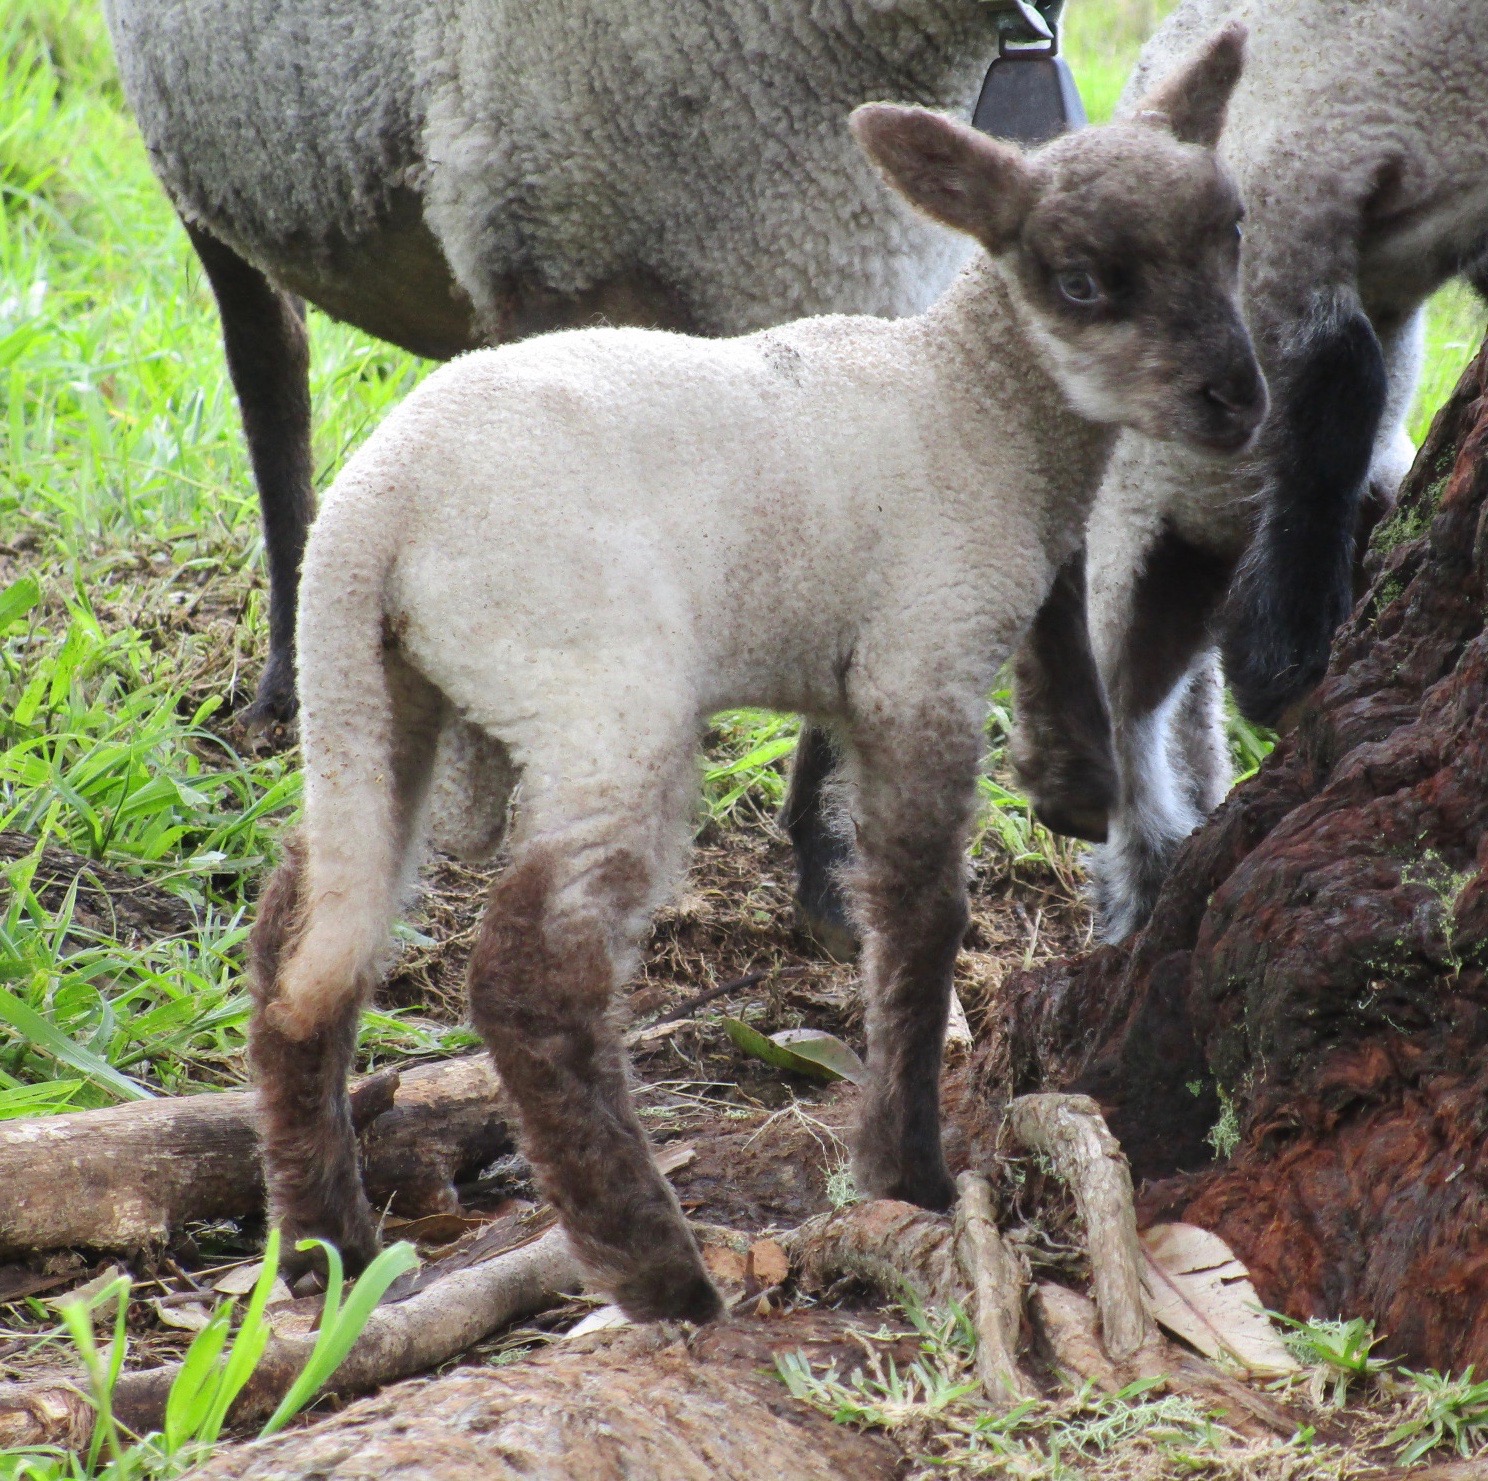 Ram lamb#2